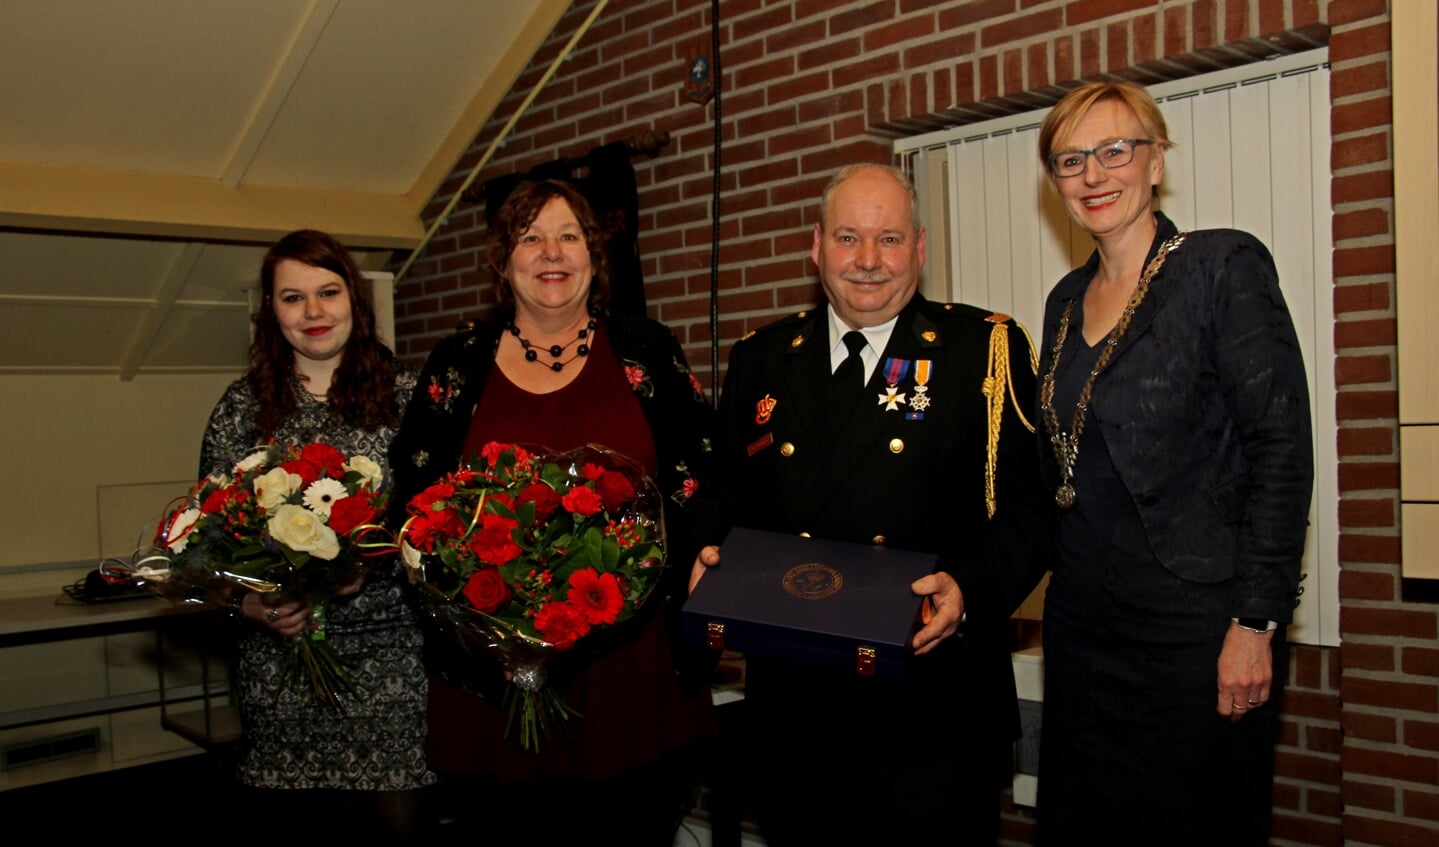 Burgemeester Marianne Besselink feliciteert Han Hobelman met zijn Koninklijke Onderscheiding. Zijn vrouw Ingrid en dochter Iris krijgen bloemen. Foto: Liesbeth Spaansen